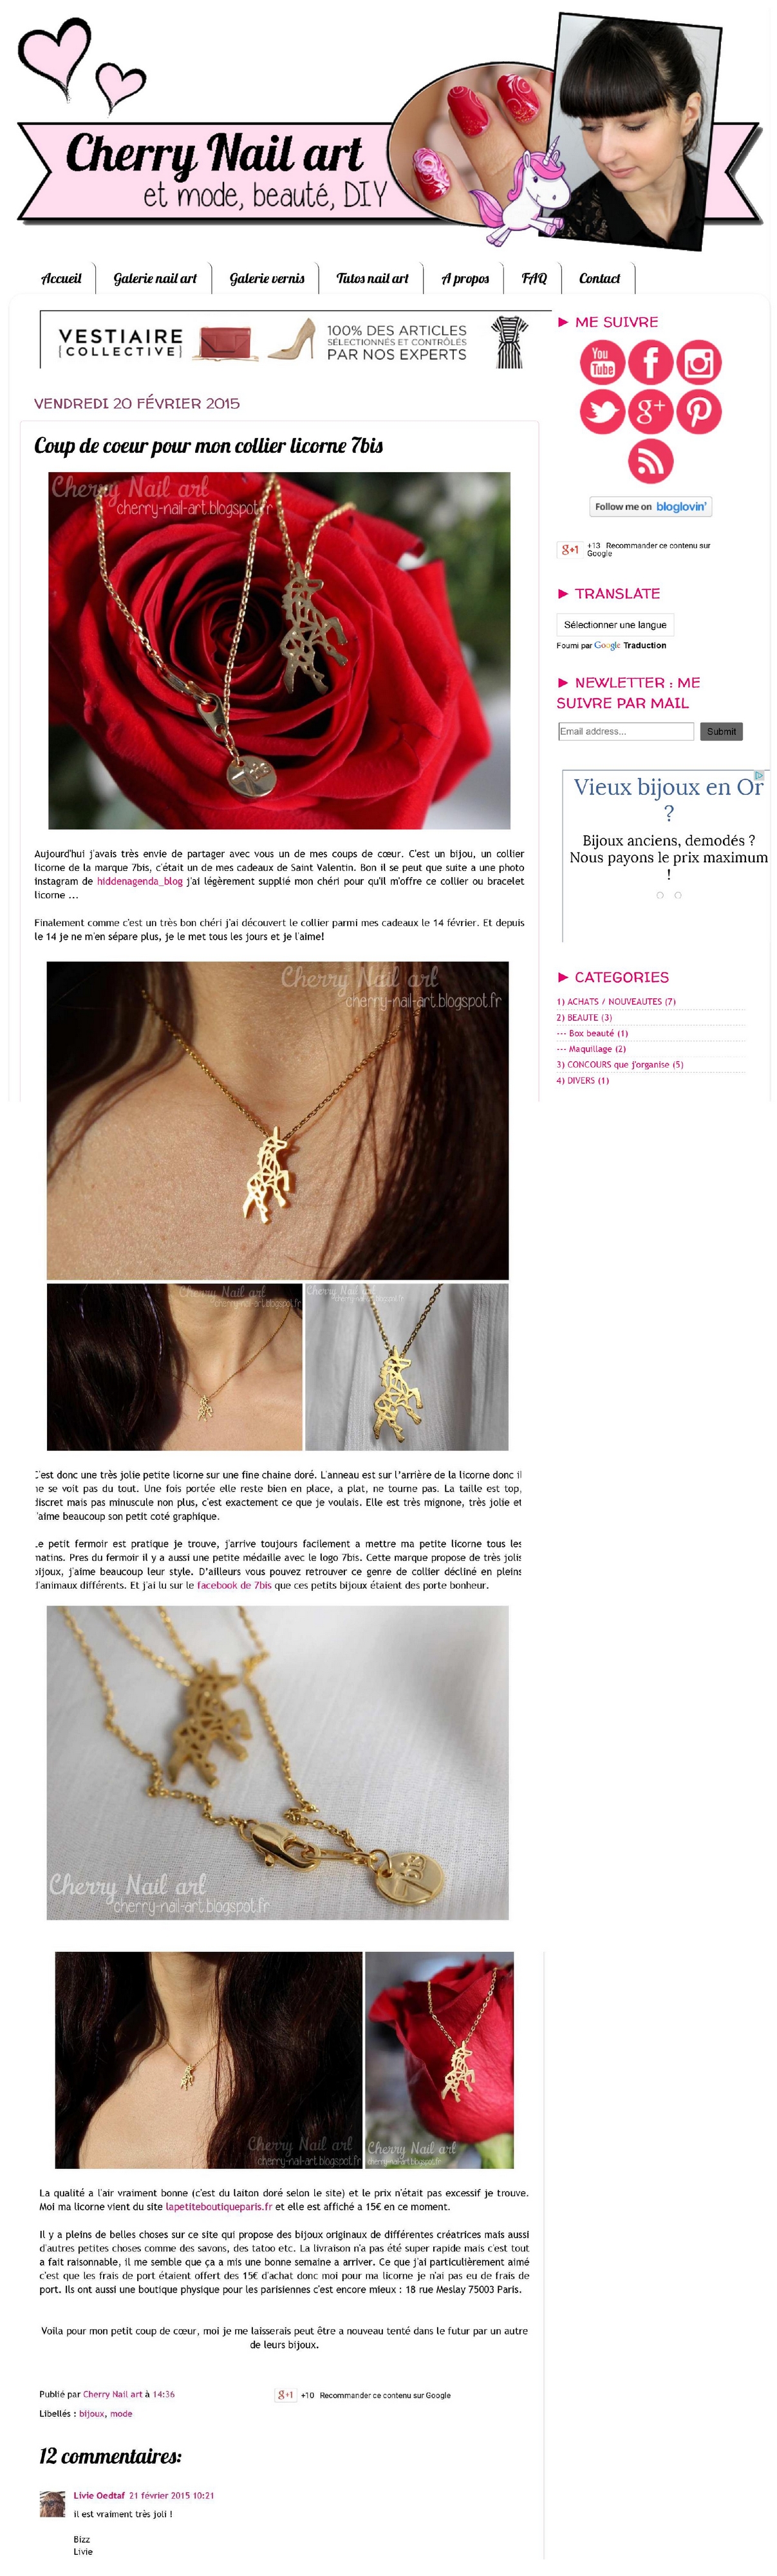 Cherry Nail art - le blog_ Coup de coeur pour mon collier licorne 7bis long